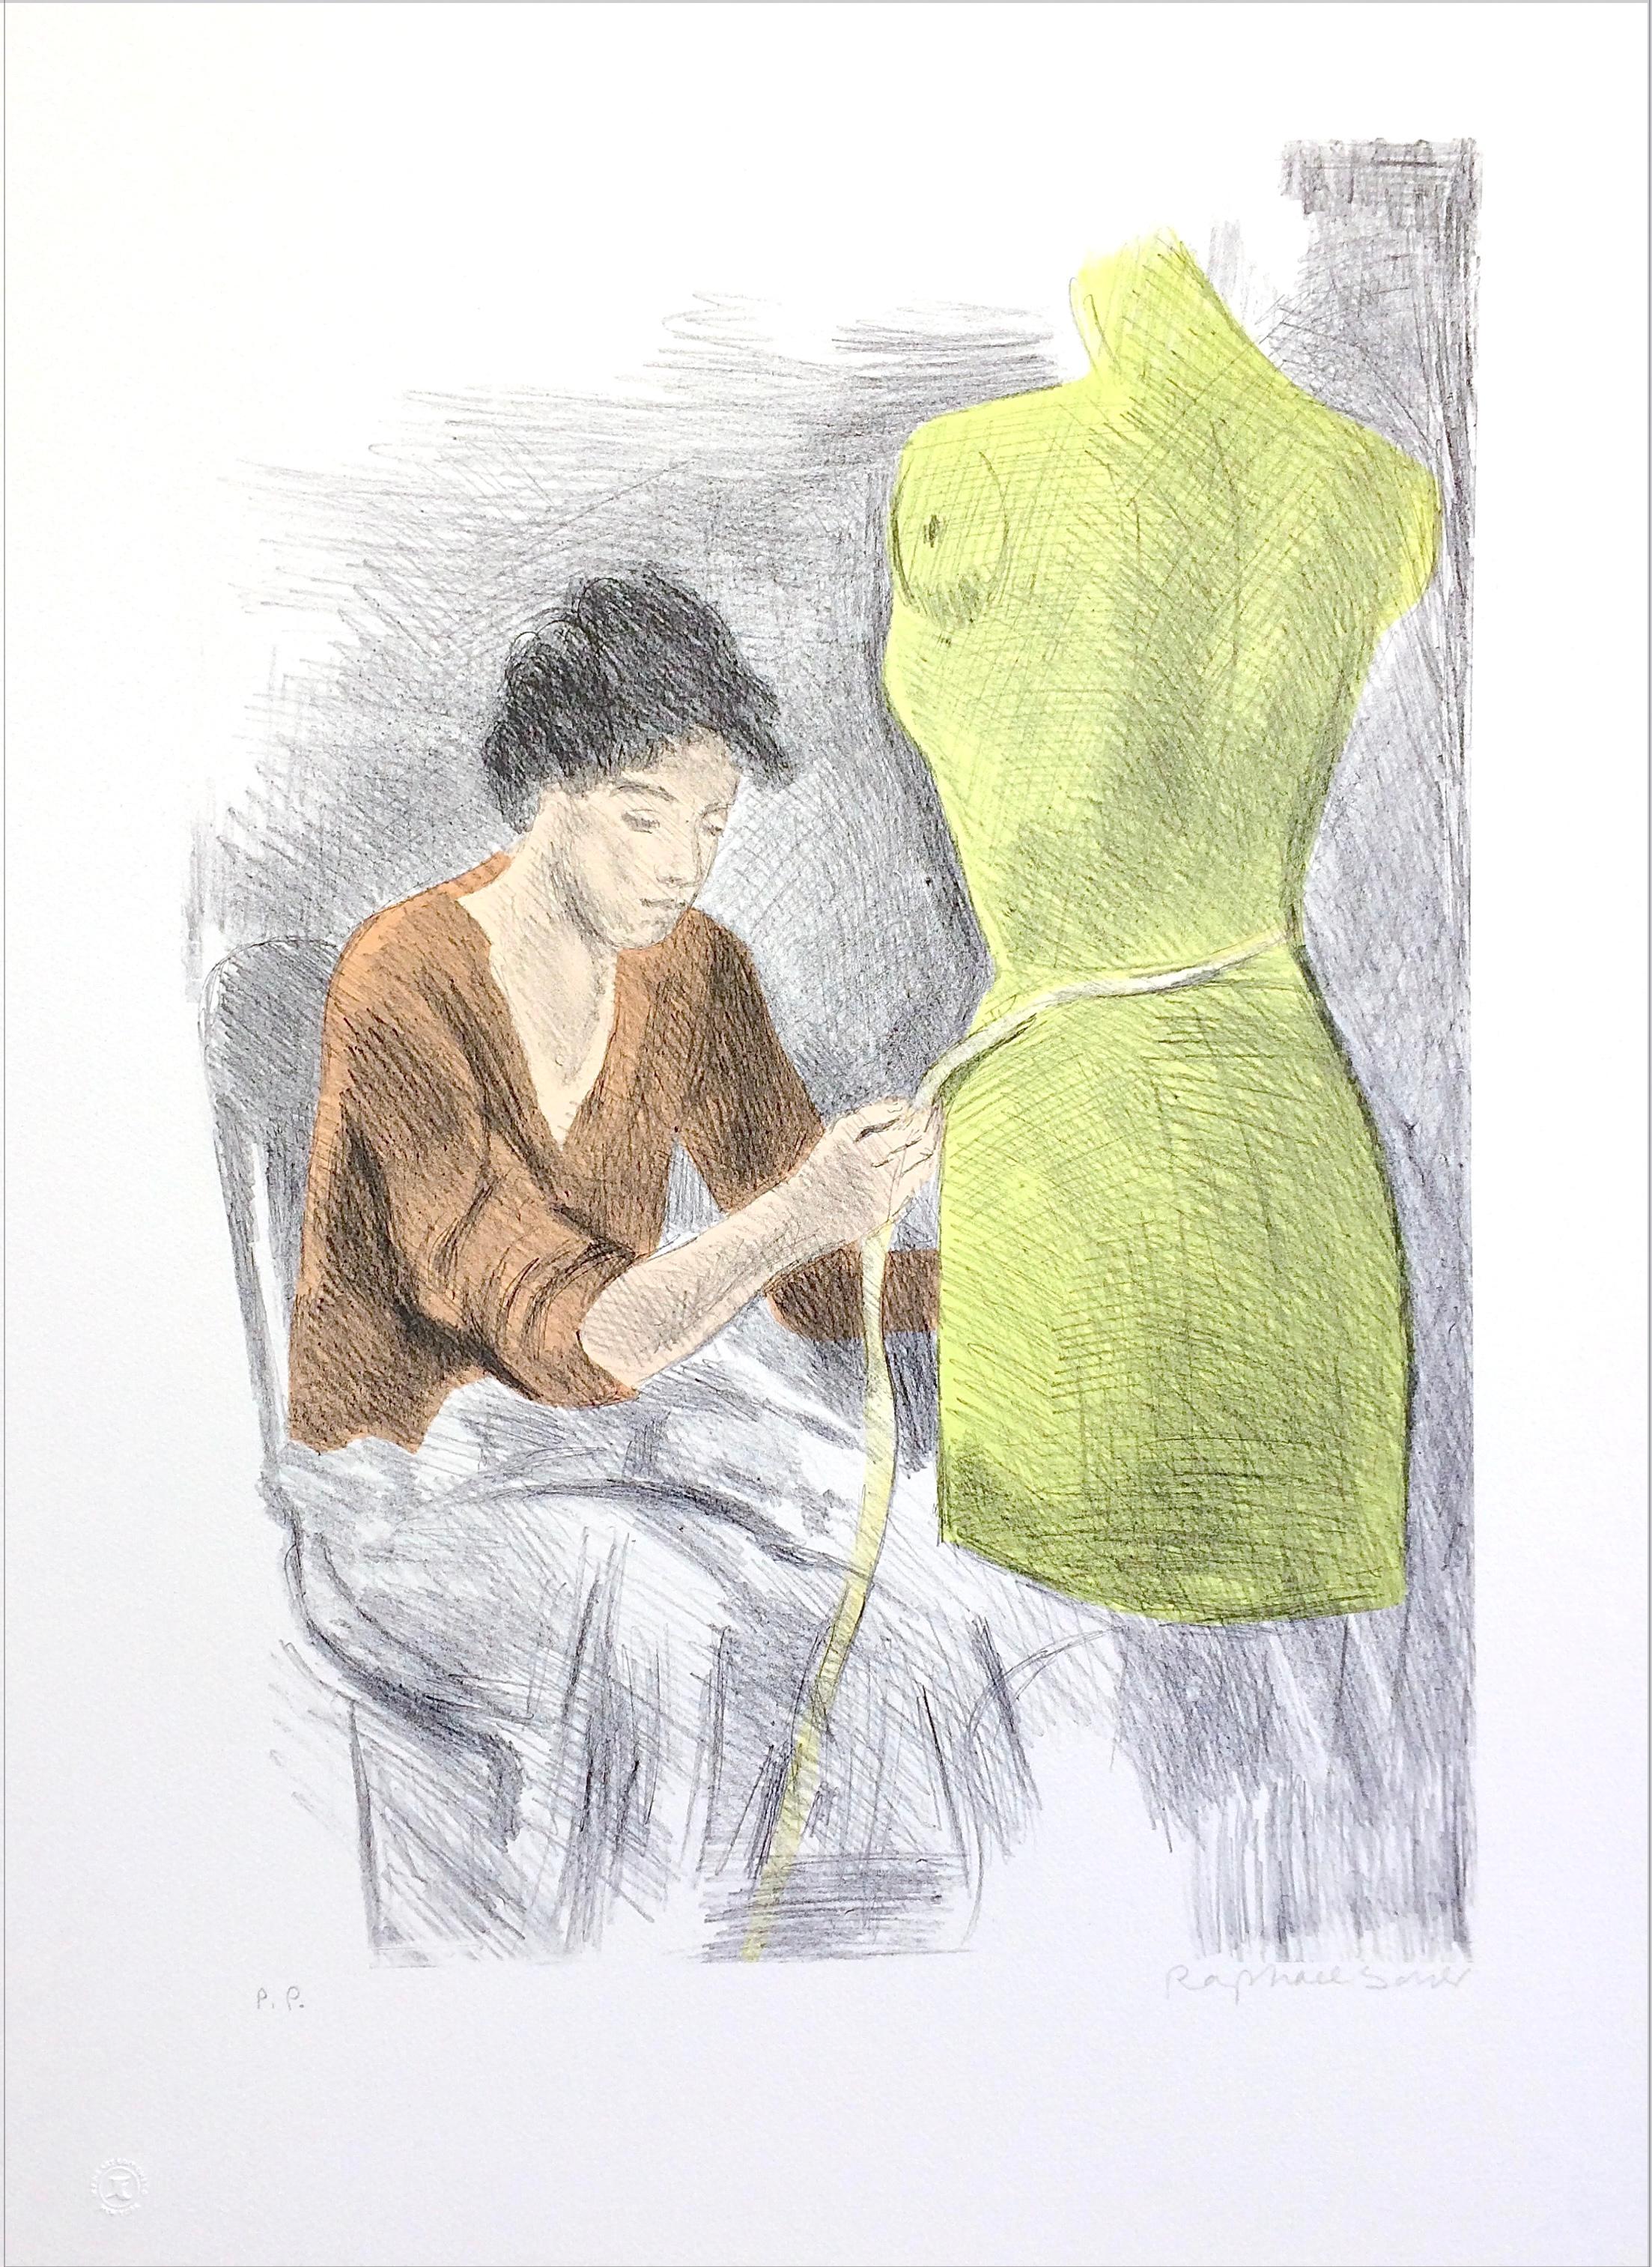 Lithographie signée jeune femme, forme de robe, rouille, jaune citron 